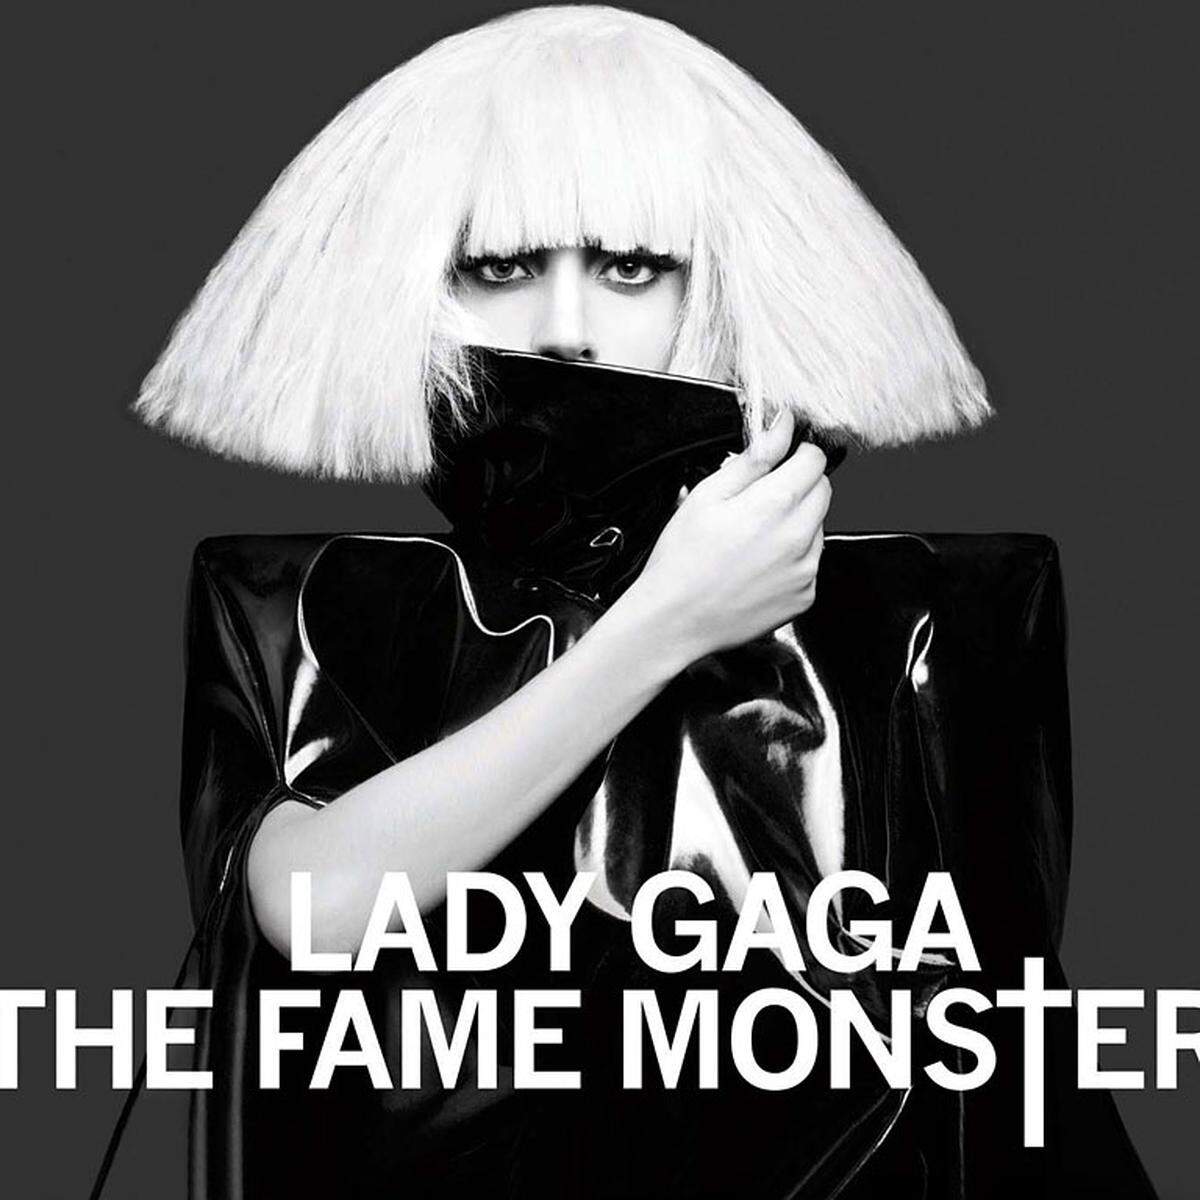 Noch zu Lebzeiten wird Lady Gaga als Ikone bezeichnet. Auch wenn ihr letztes Album katastrophal war. Sprachlos macht einen hingegen die Hit-Dichte auf "The Fame Monster" (2009).